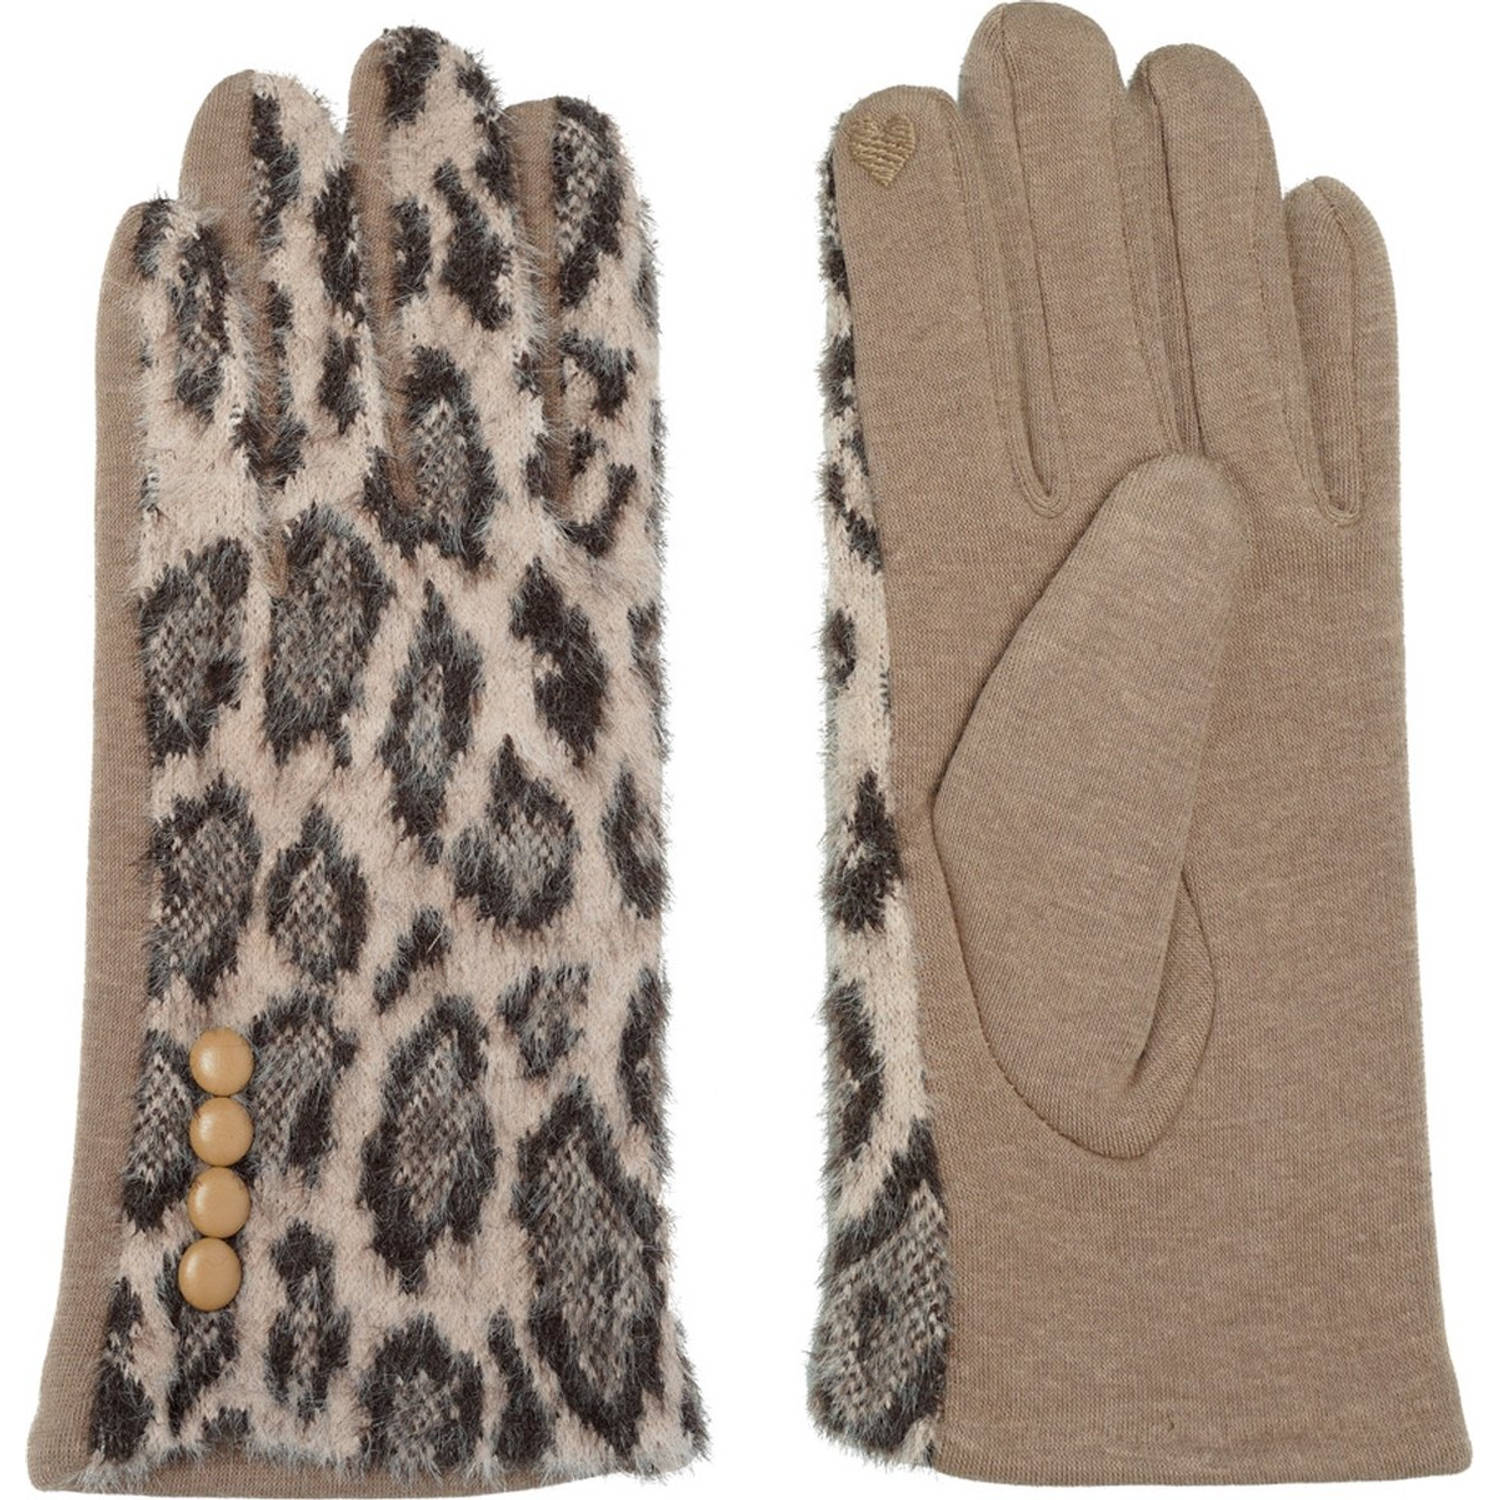 Handschoenen Dames panterprint Handschoenen Warm Touch - Trendy handschoenen voor winter look - handschoenen met